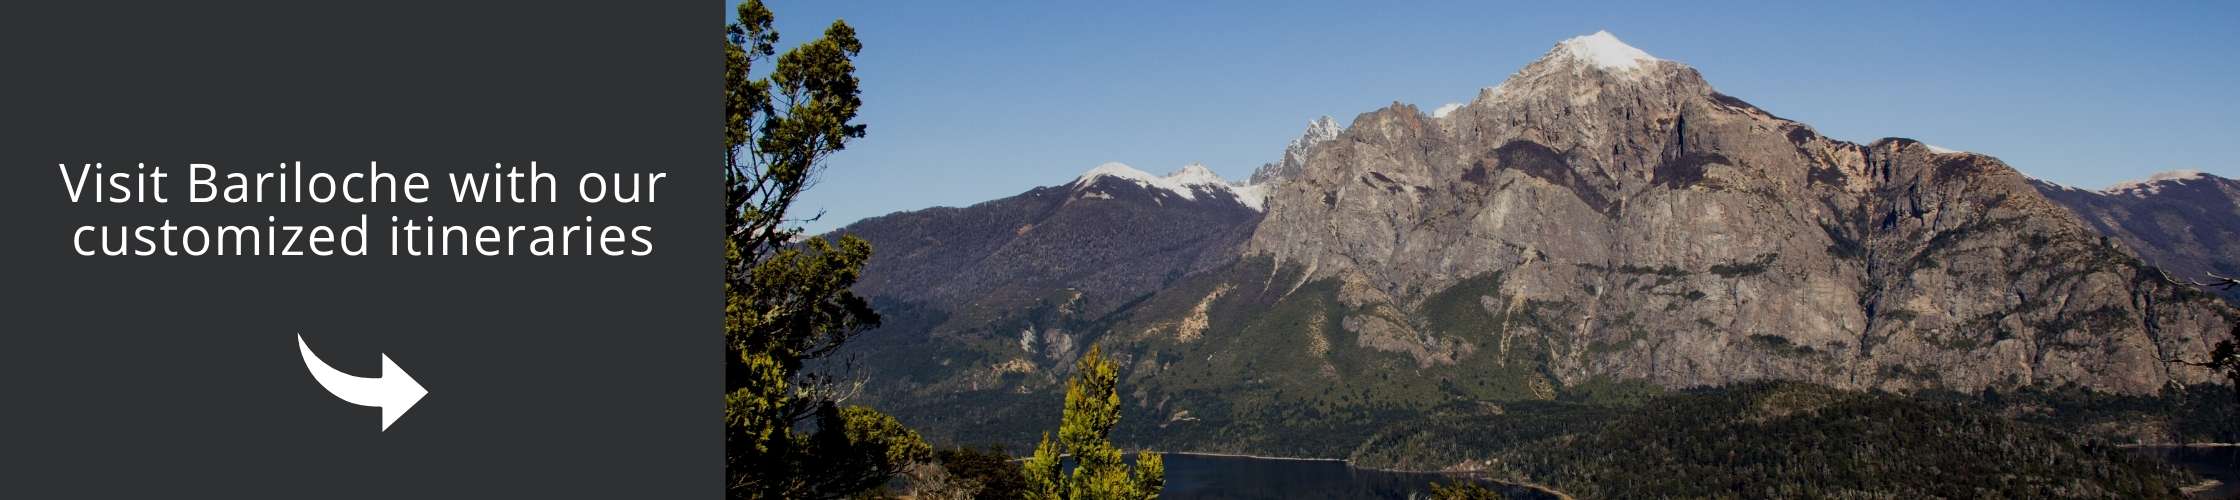 Cerro Llao Llao | Tours to Bariloche